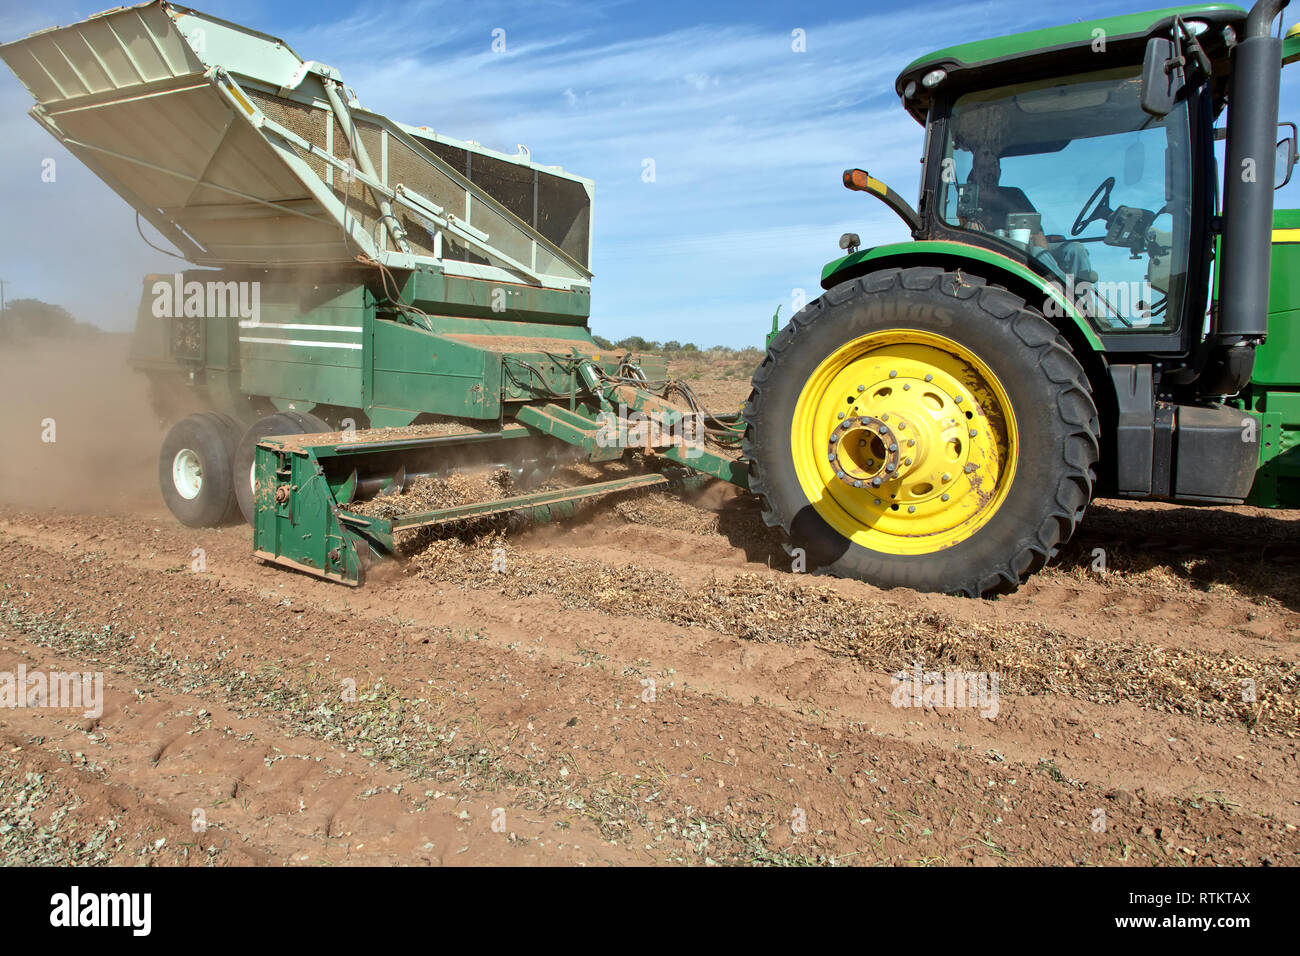 John Deere 8100 Traktor Abschleppen des Mähdreschers Erntevorsatz ERDNUSS Arachis hypogaea Zuschneiden,''. Stockfoto